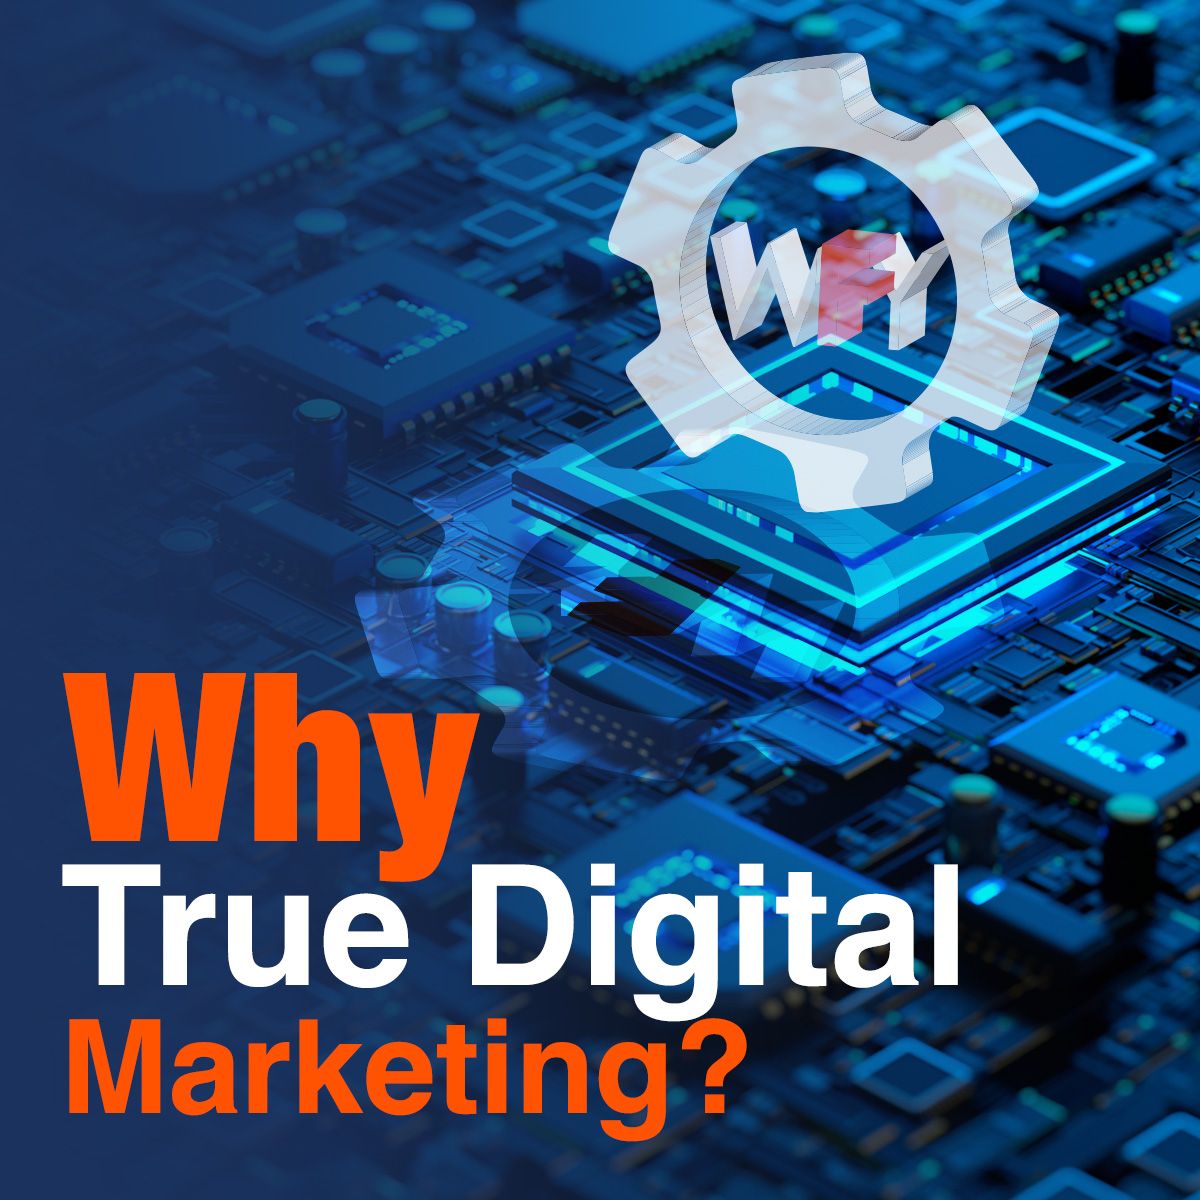 Why True Digital Marketing?